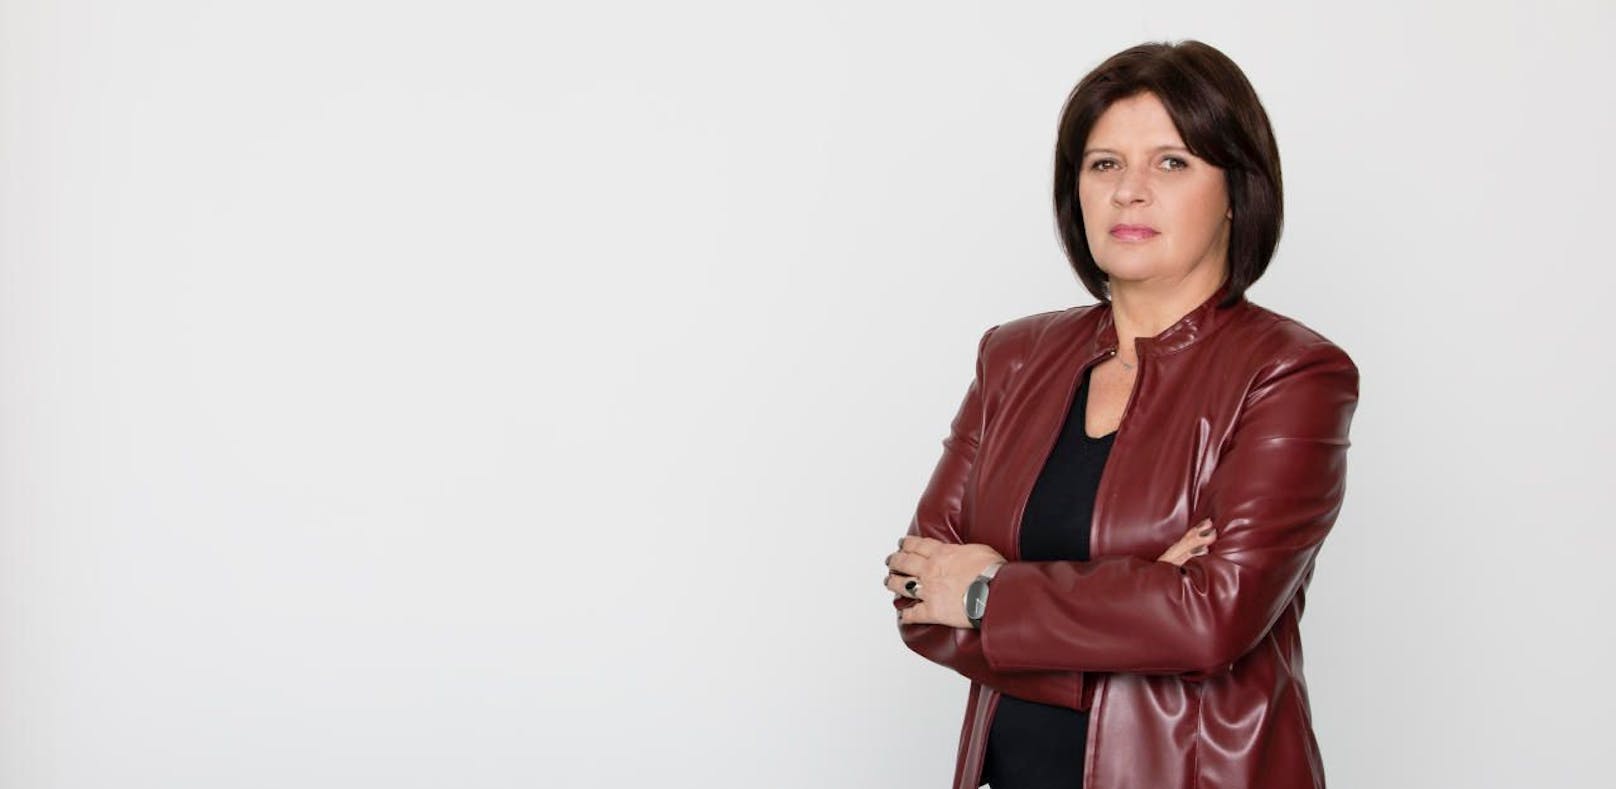 Renate Anderl (56) ist seit April 2018 Präsidentin von AK Wien und Bundes-AK. Sie fordert strengere Regeln für Arbeitgeber beim Thema Überstunden.